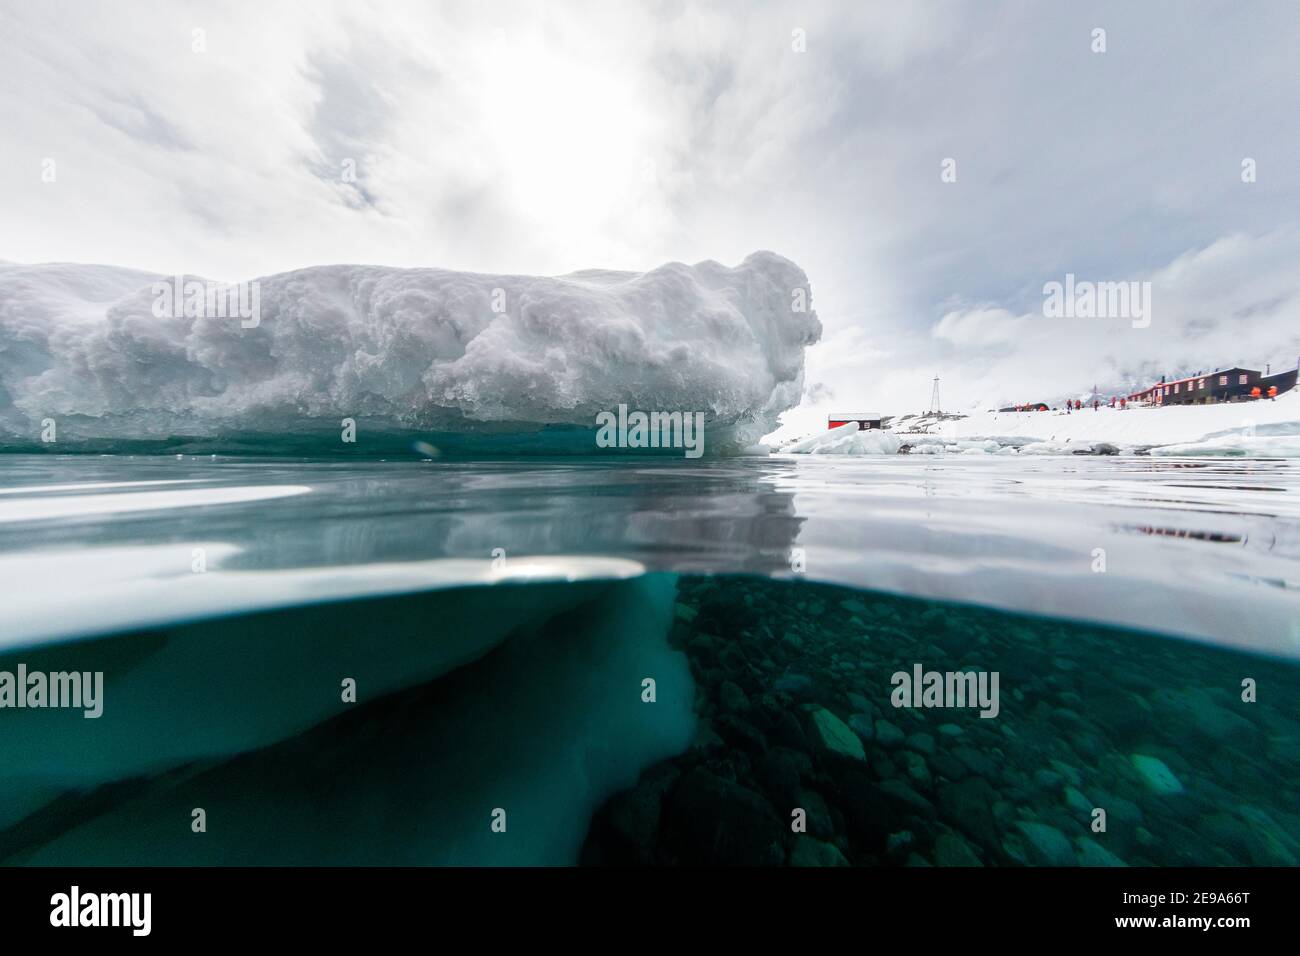 Über- und Unteransicht der Britischen Basis A und des Eises in Port Lockroy, Antarktis. Stockfoto